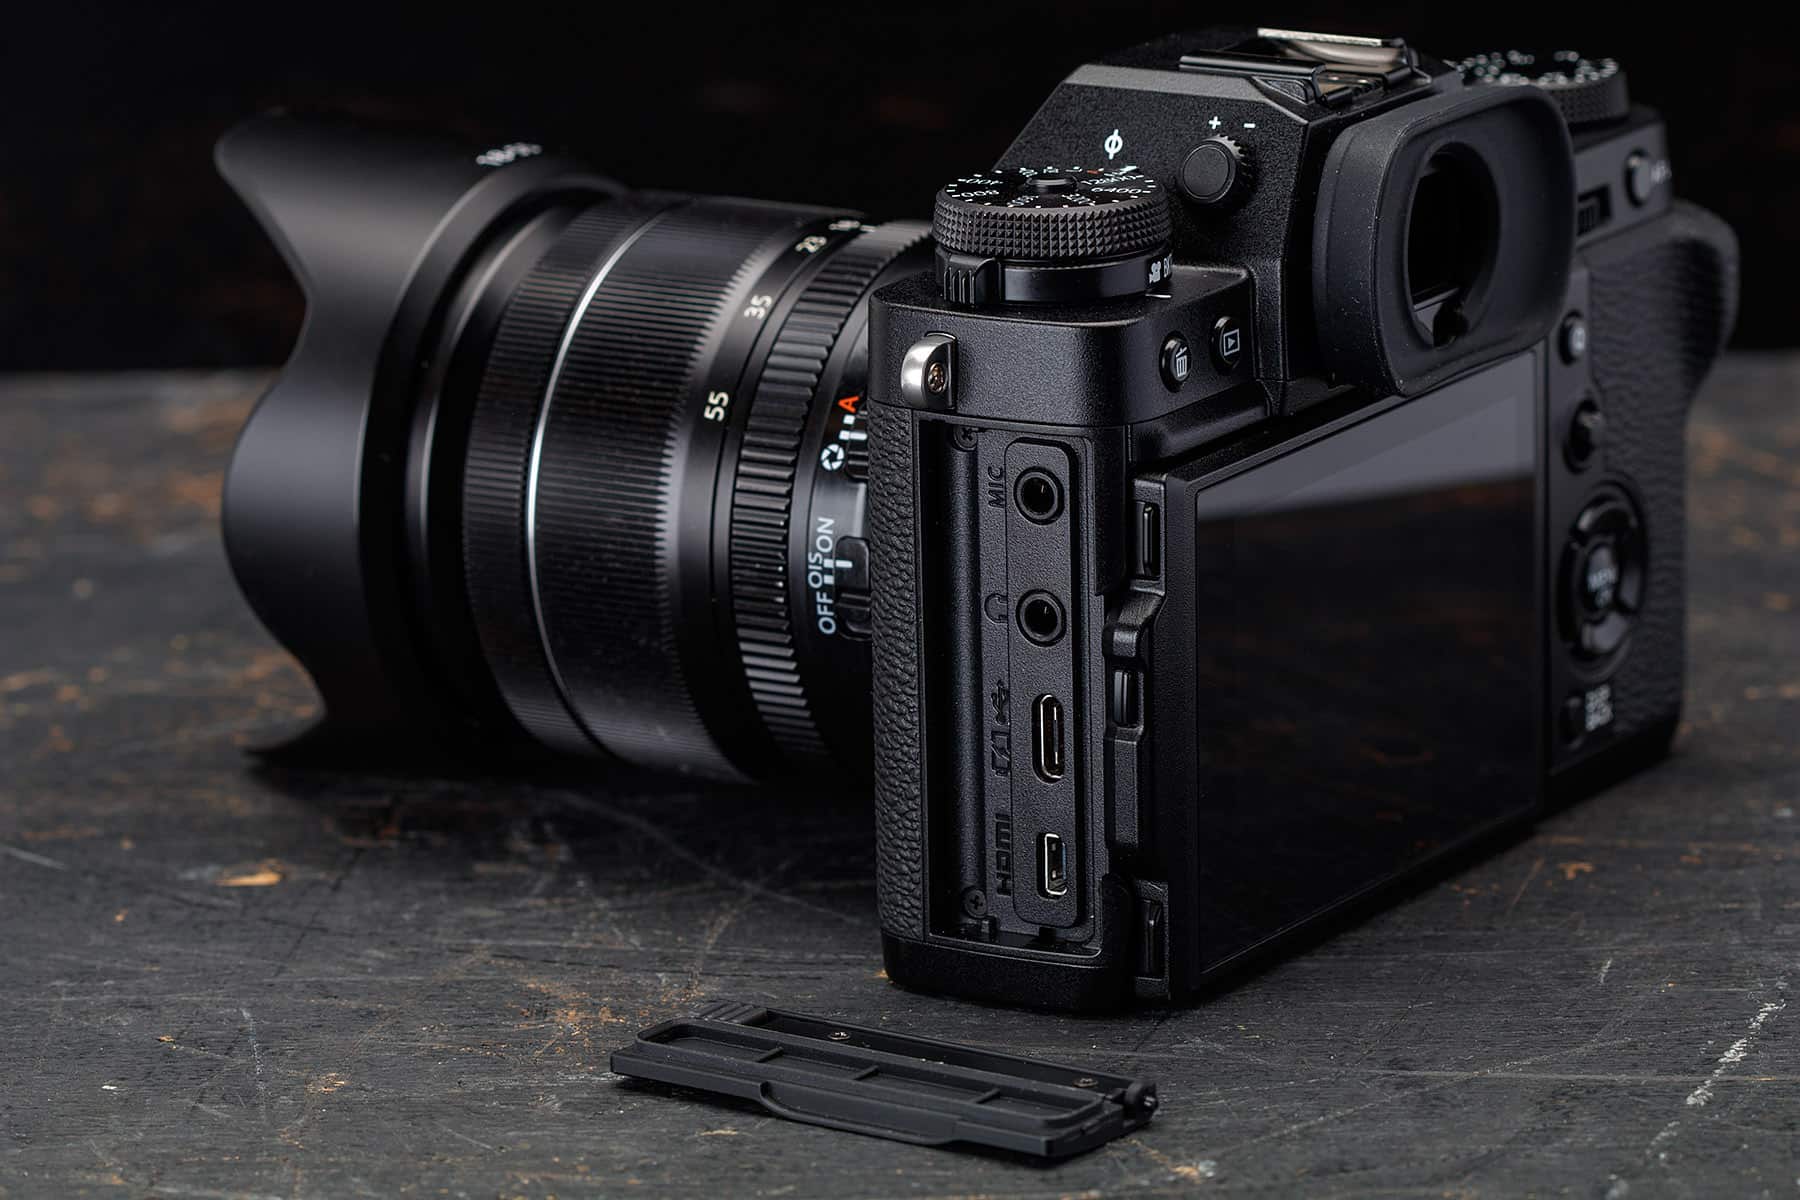 Máy ảnh Fujifilm X-T3 với ống kính XF 16-80mm (Black)